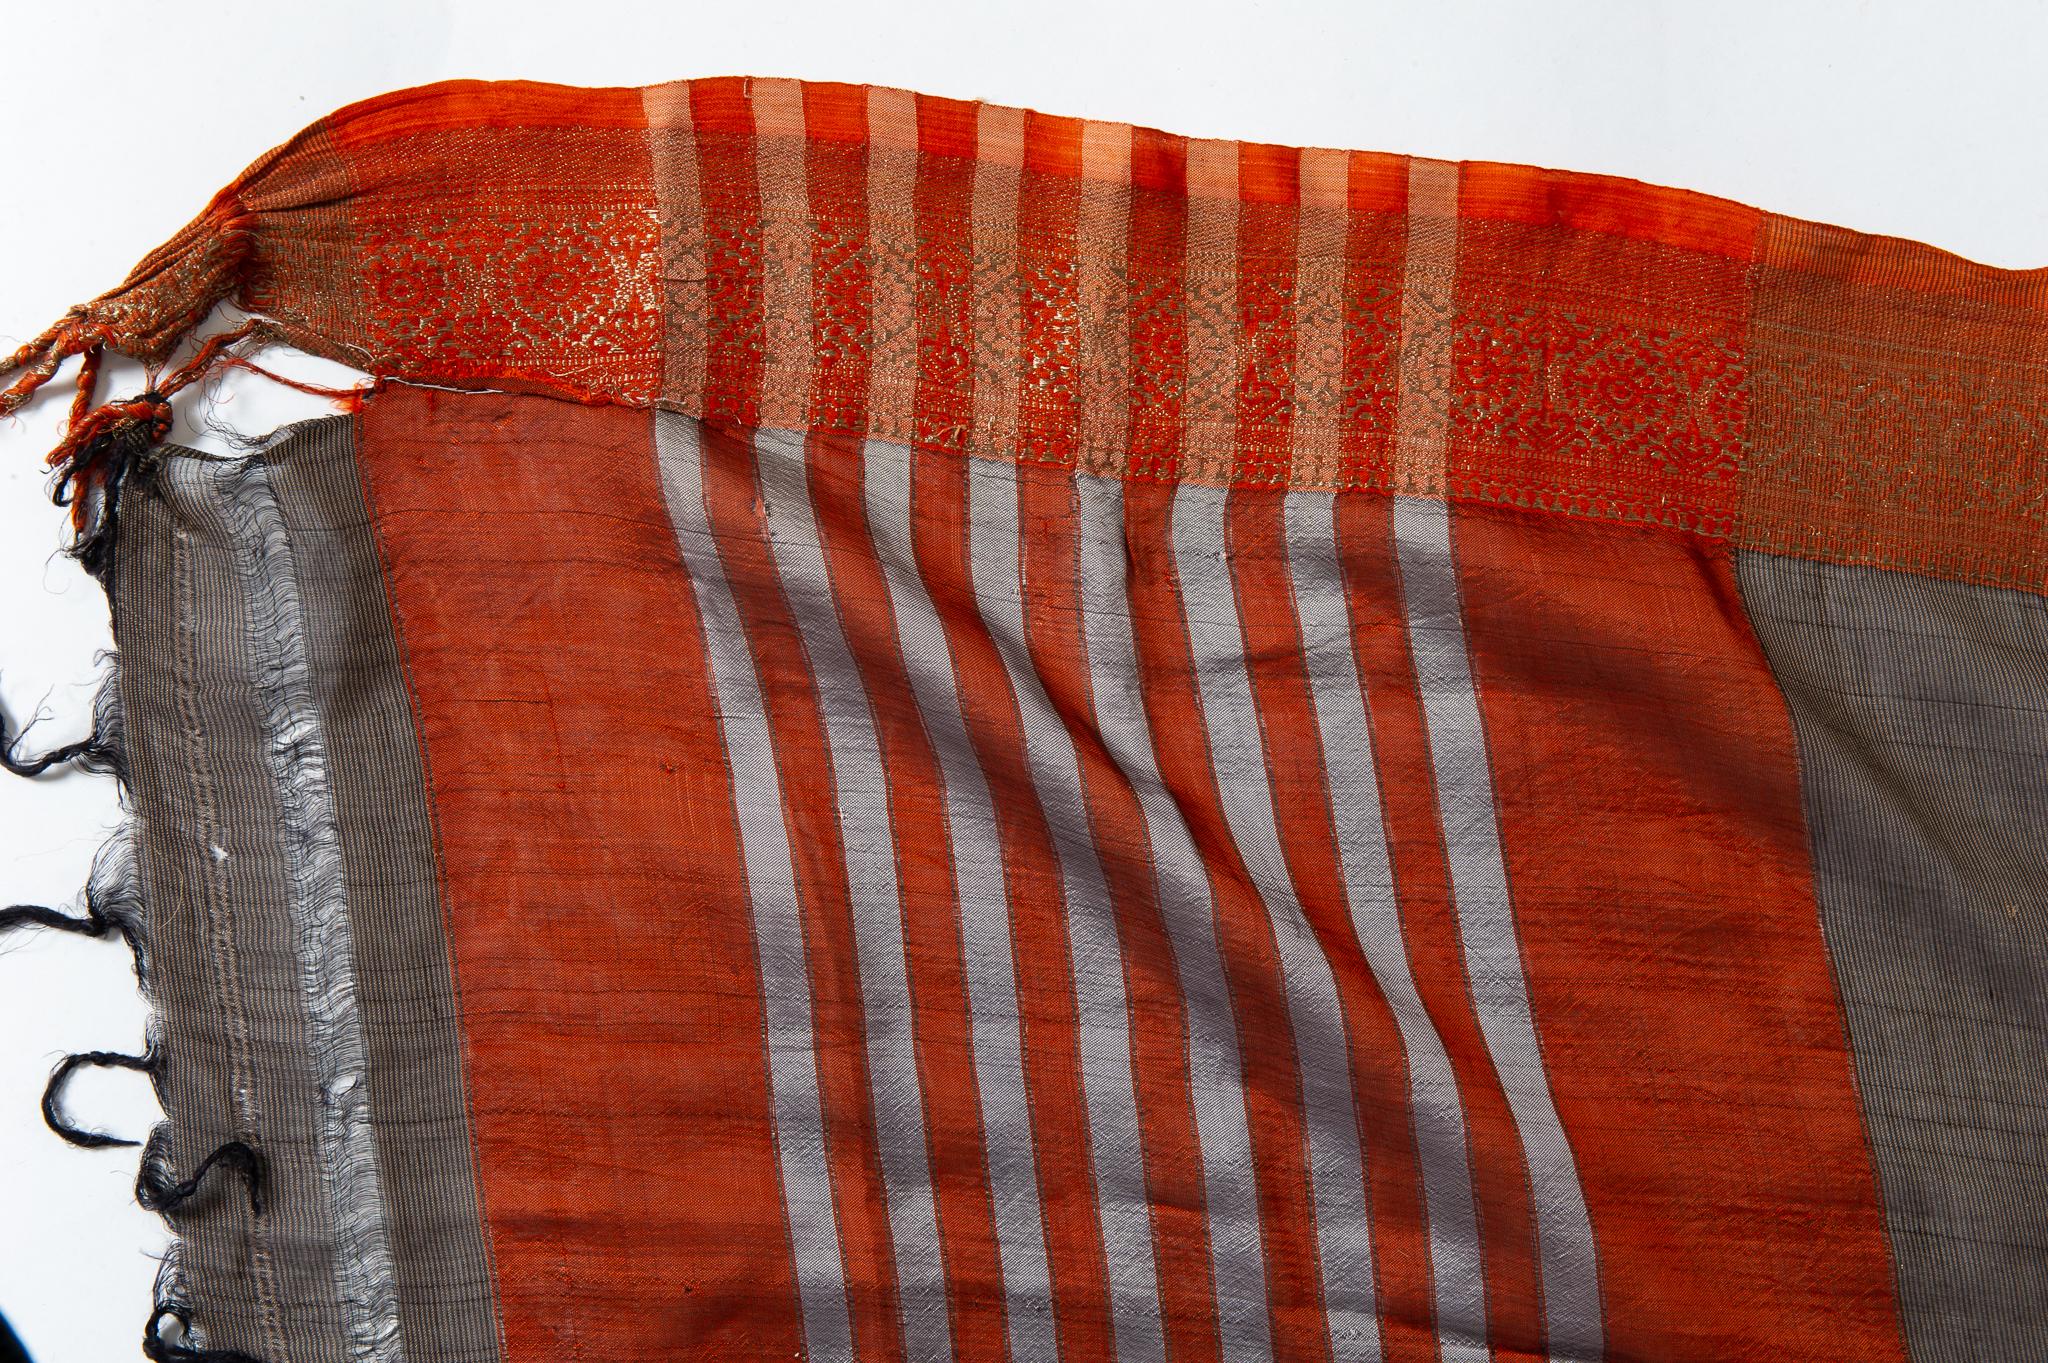  Indisches Sari-Sommerkleid in Braun, Rot und Goldbordüre, ebenfalls für den Abend im Angebot 2